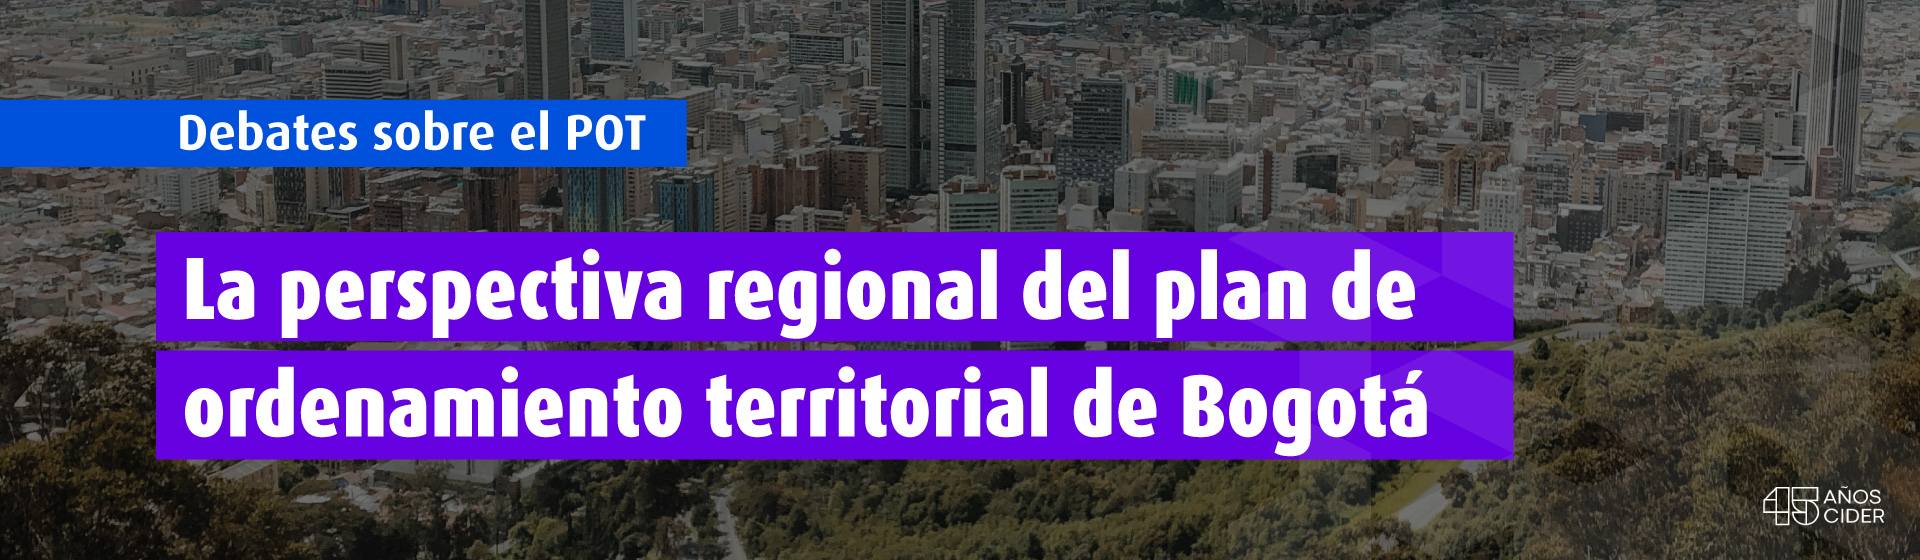 Debates sobre el POT La perspectiva regional del plan de ordenamiento territorial de Bogotá- Cider | Uniandes